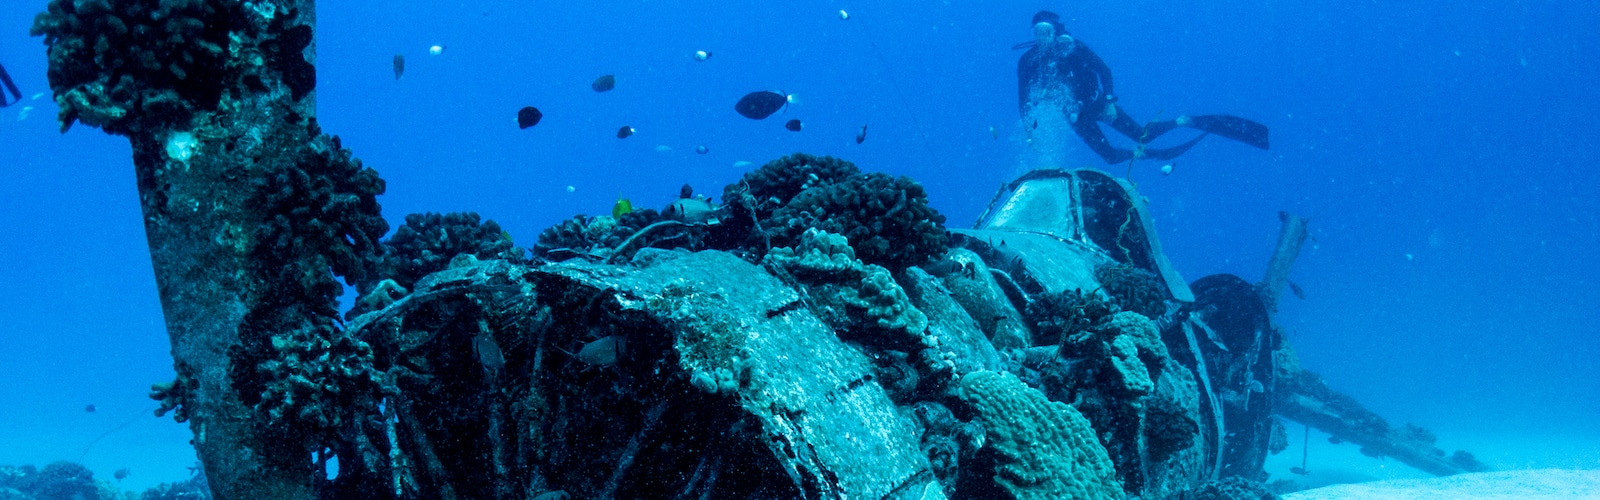 Oahu Scuba Diving Excursions, Best Oahu Tours & Activities